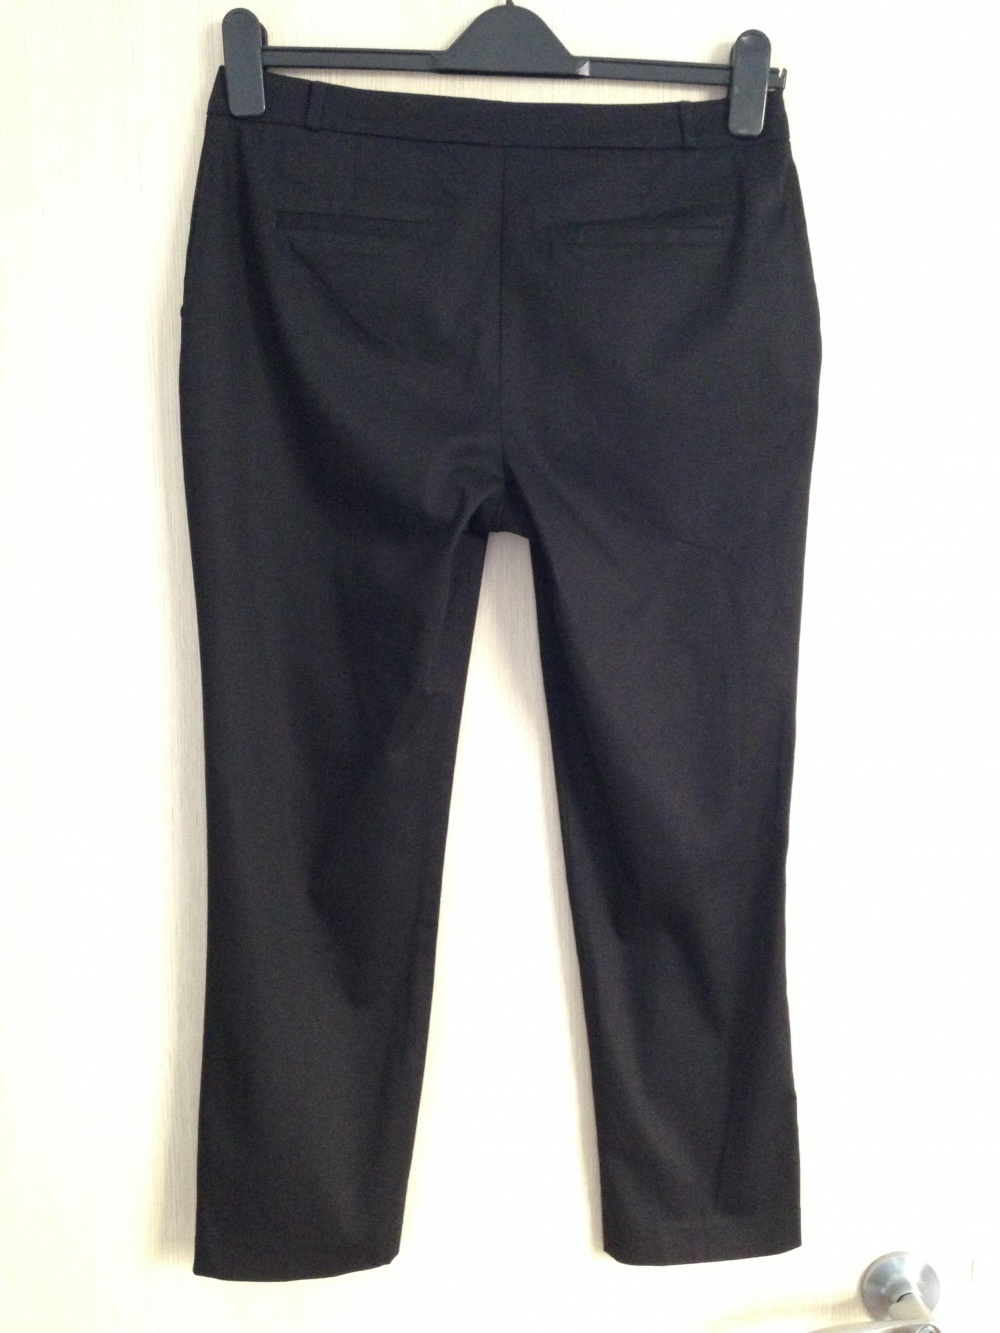 Укорочённые брюки "Dorothy Perkins ", 46-48 размер, Великобритания.